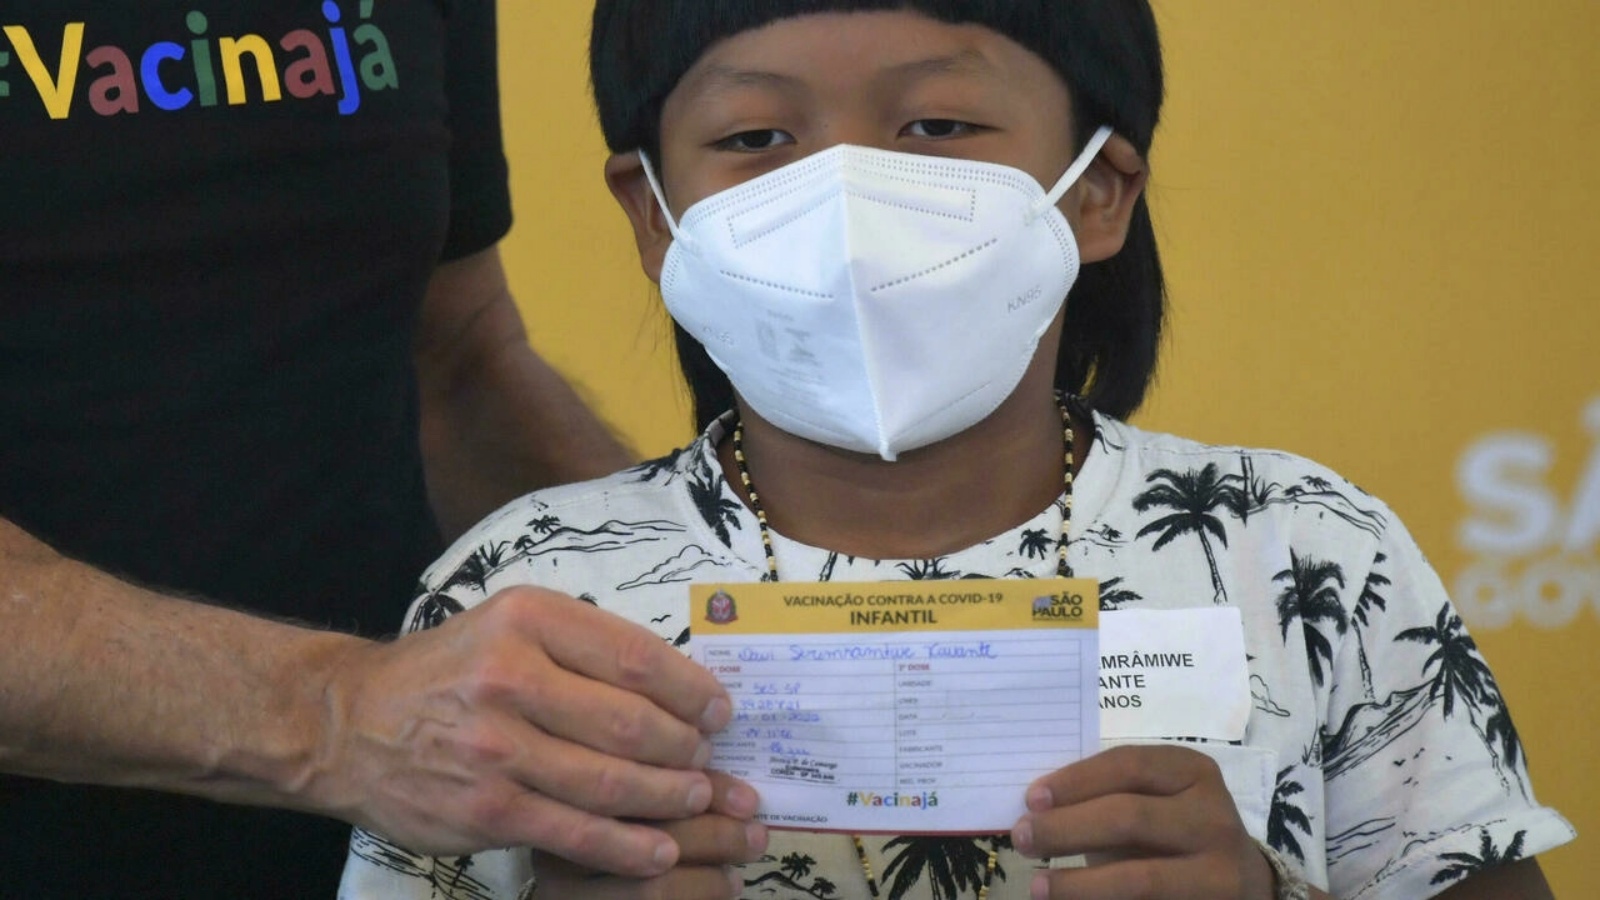 دافي سيريمراميوي زافانتي، وهو من السكان الأصليين يبلغ من العمر ثماني سنوات ويعاني إعاقة، أول طفل برازيلي يتلقى اللقاح خلال حفل رسمي في مستشفى عيادات ساو باولو في 14 كانون الثاني/يناير 2022